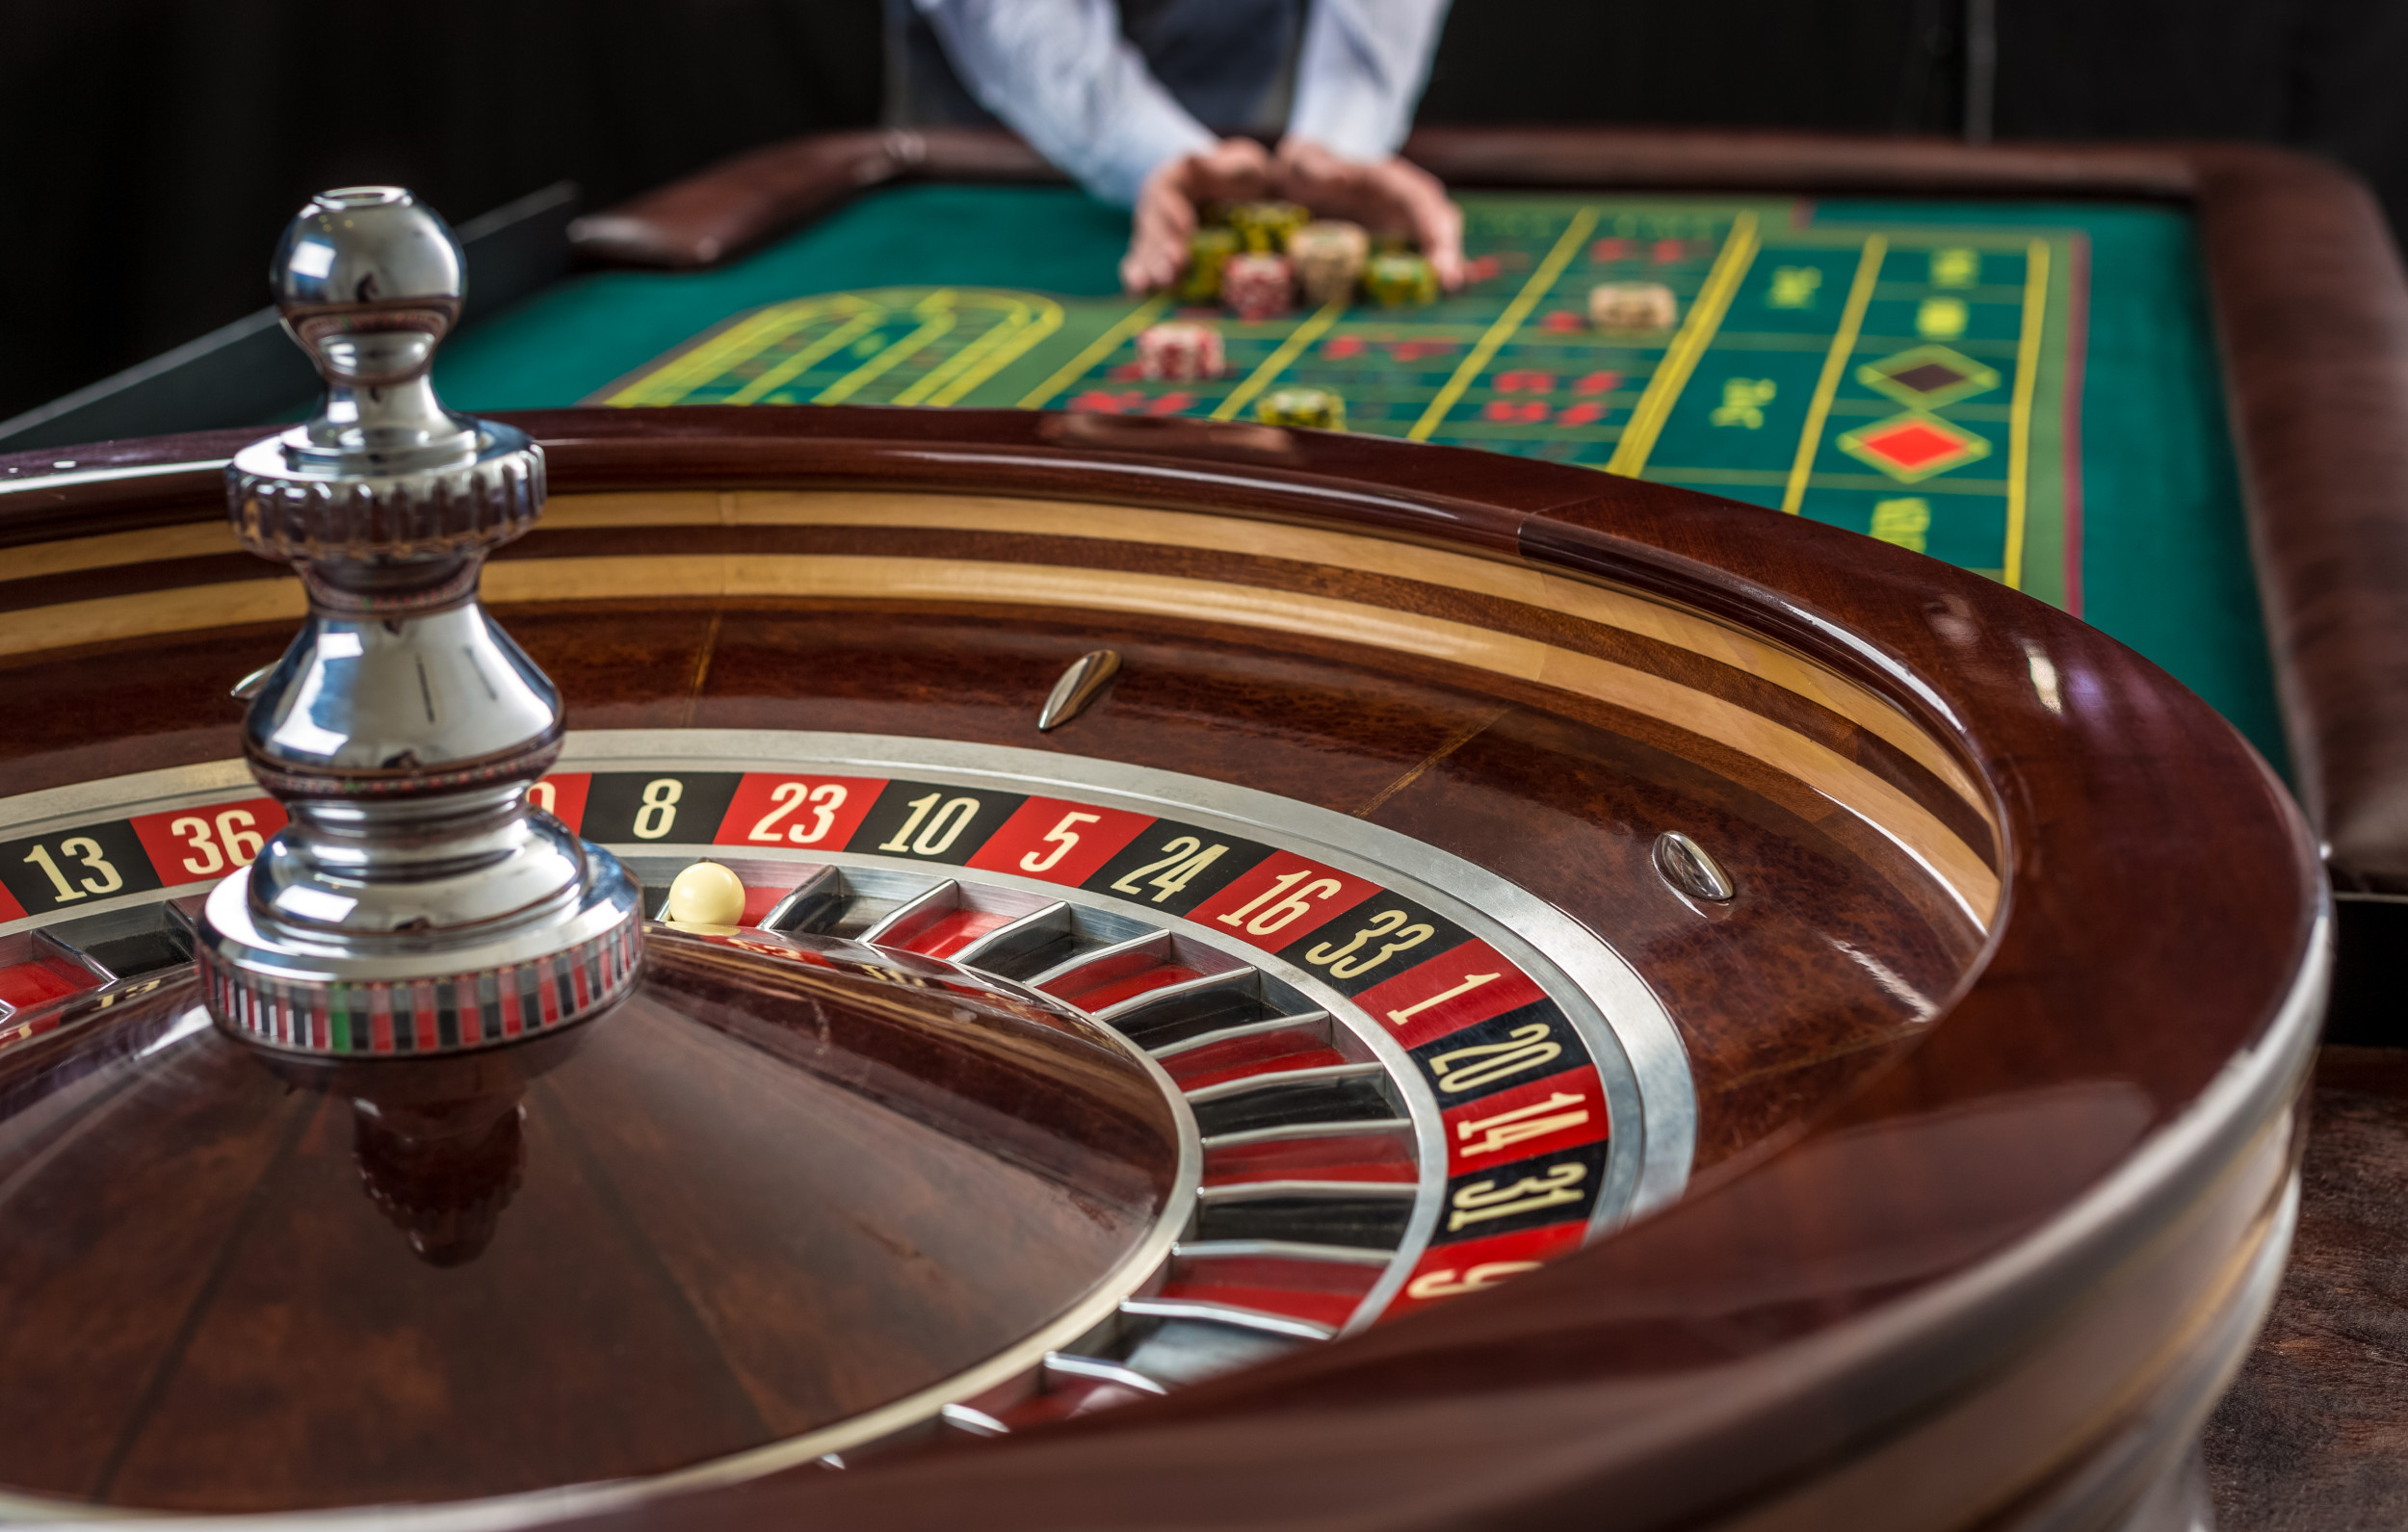 Dunia Matematika dalam Industri Casino: Probabilitas dan Peluang